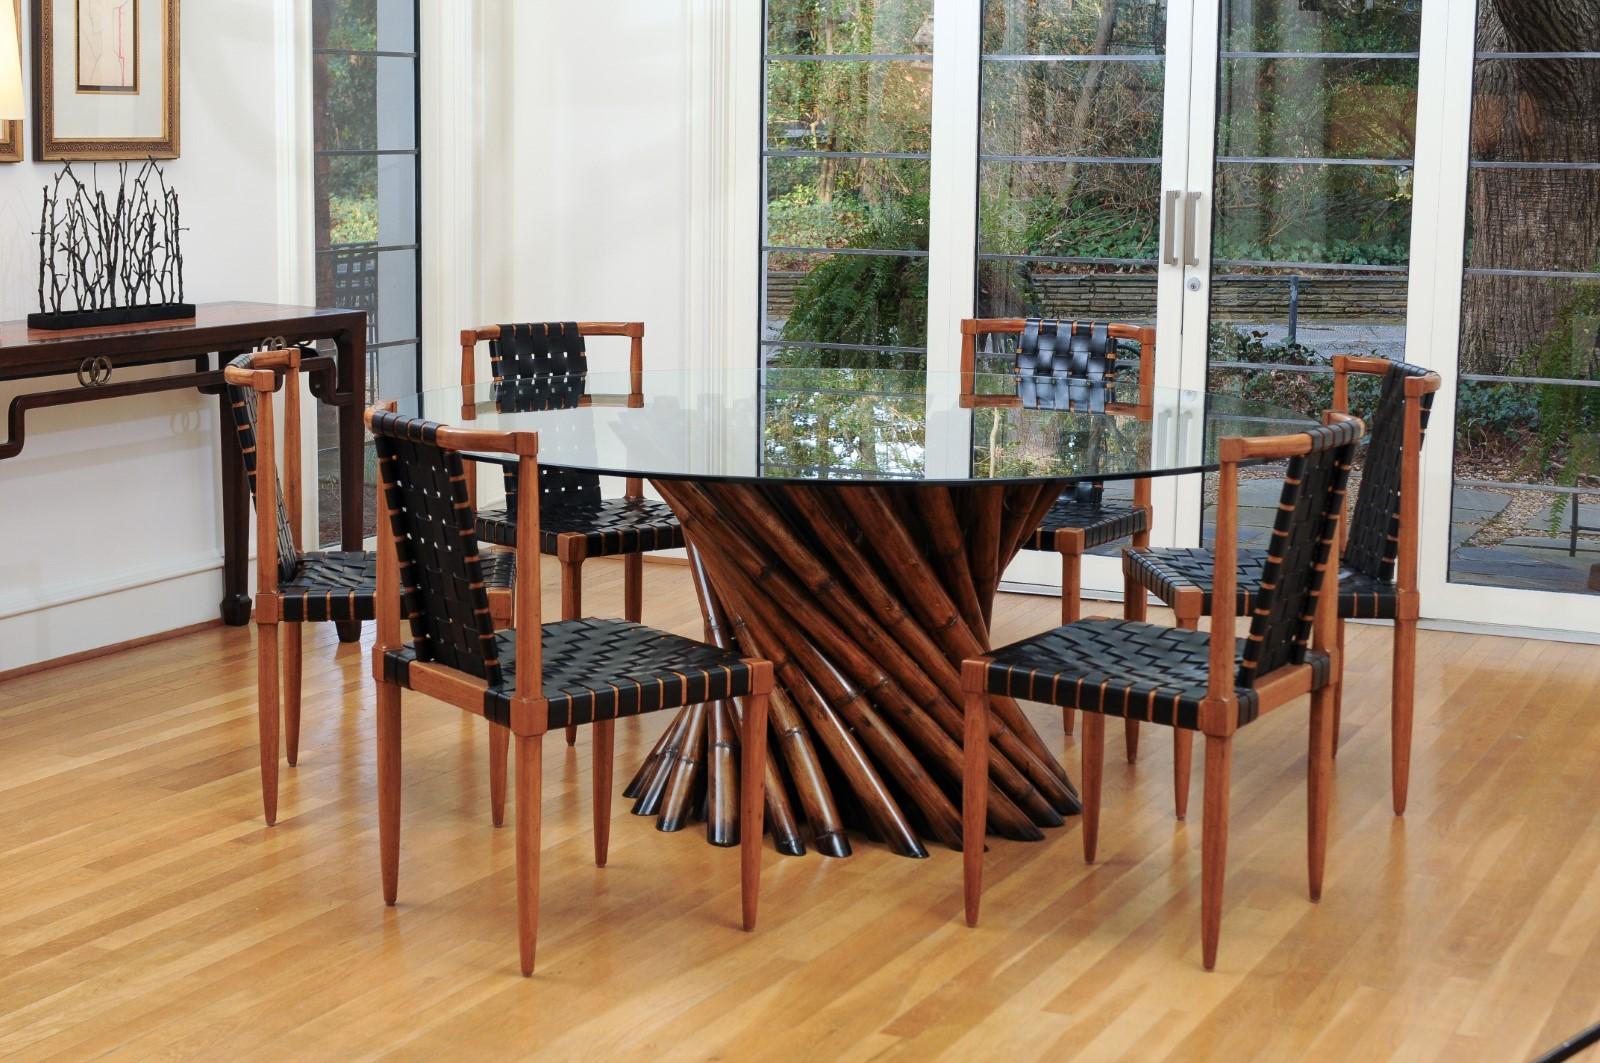 Une remarquable table à manger ou centre de table en bambou restaurée par le visionnaire Budji Layug, vers 1980. De grandes tiges matures de bambou coupé intelligemment construites comme une base de table conçue pour supporter un grand plateau en